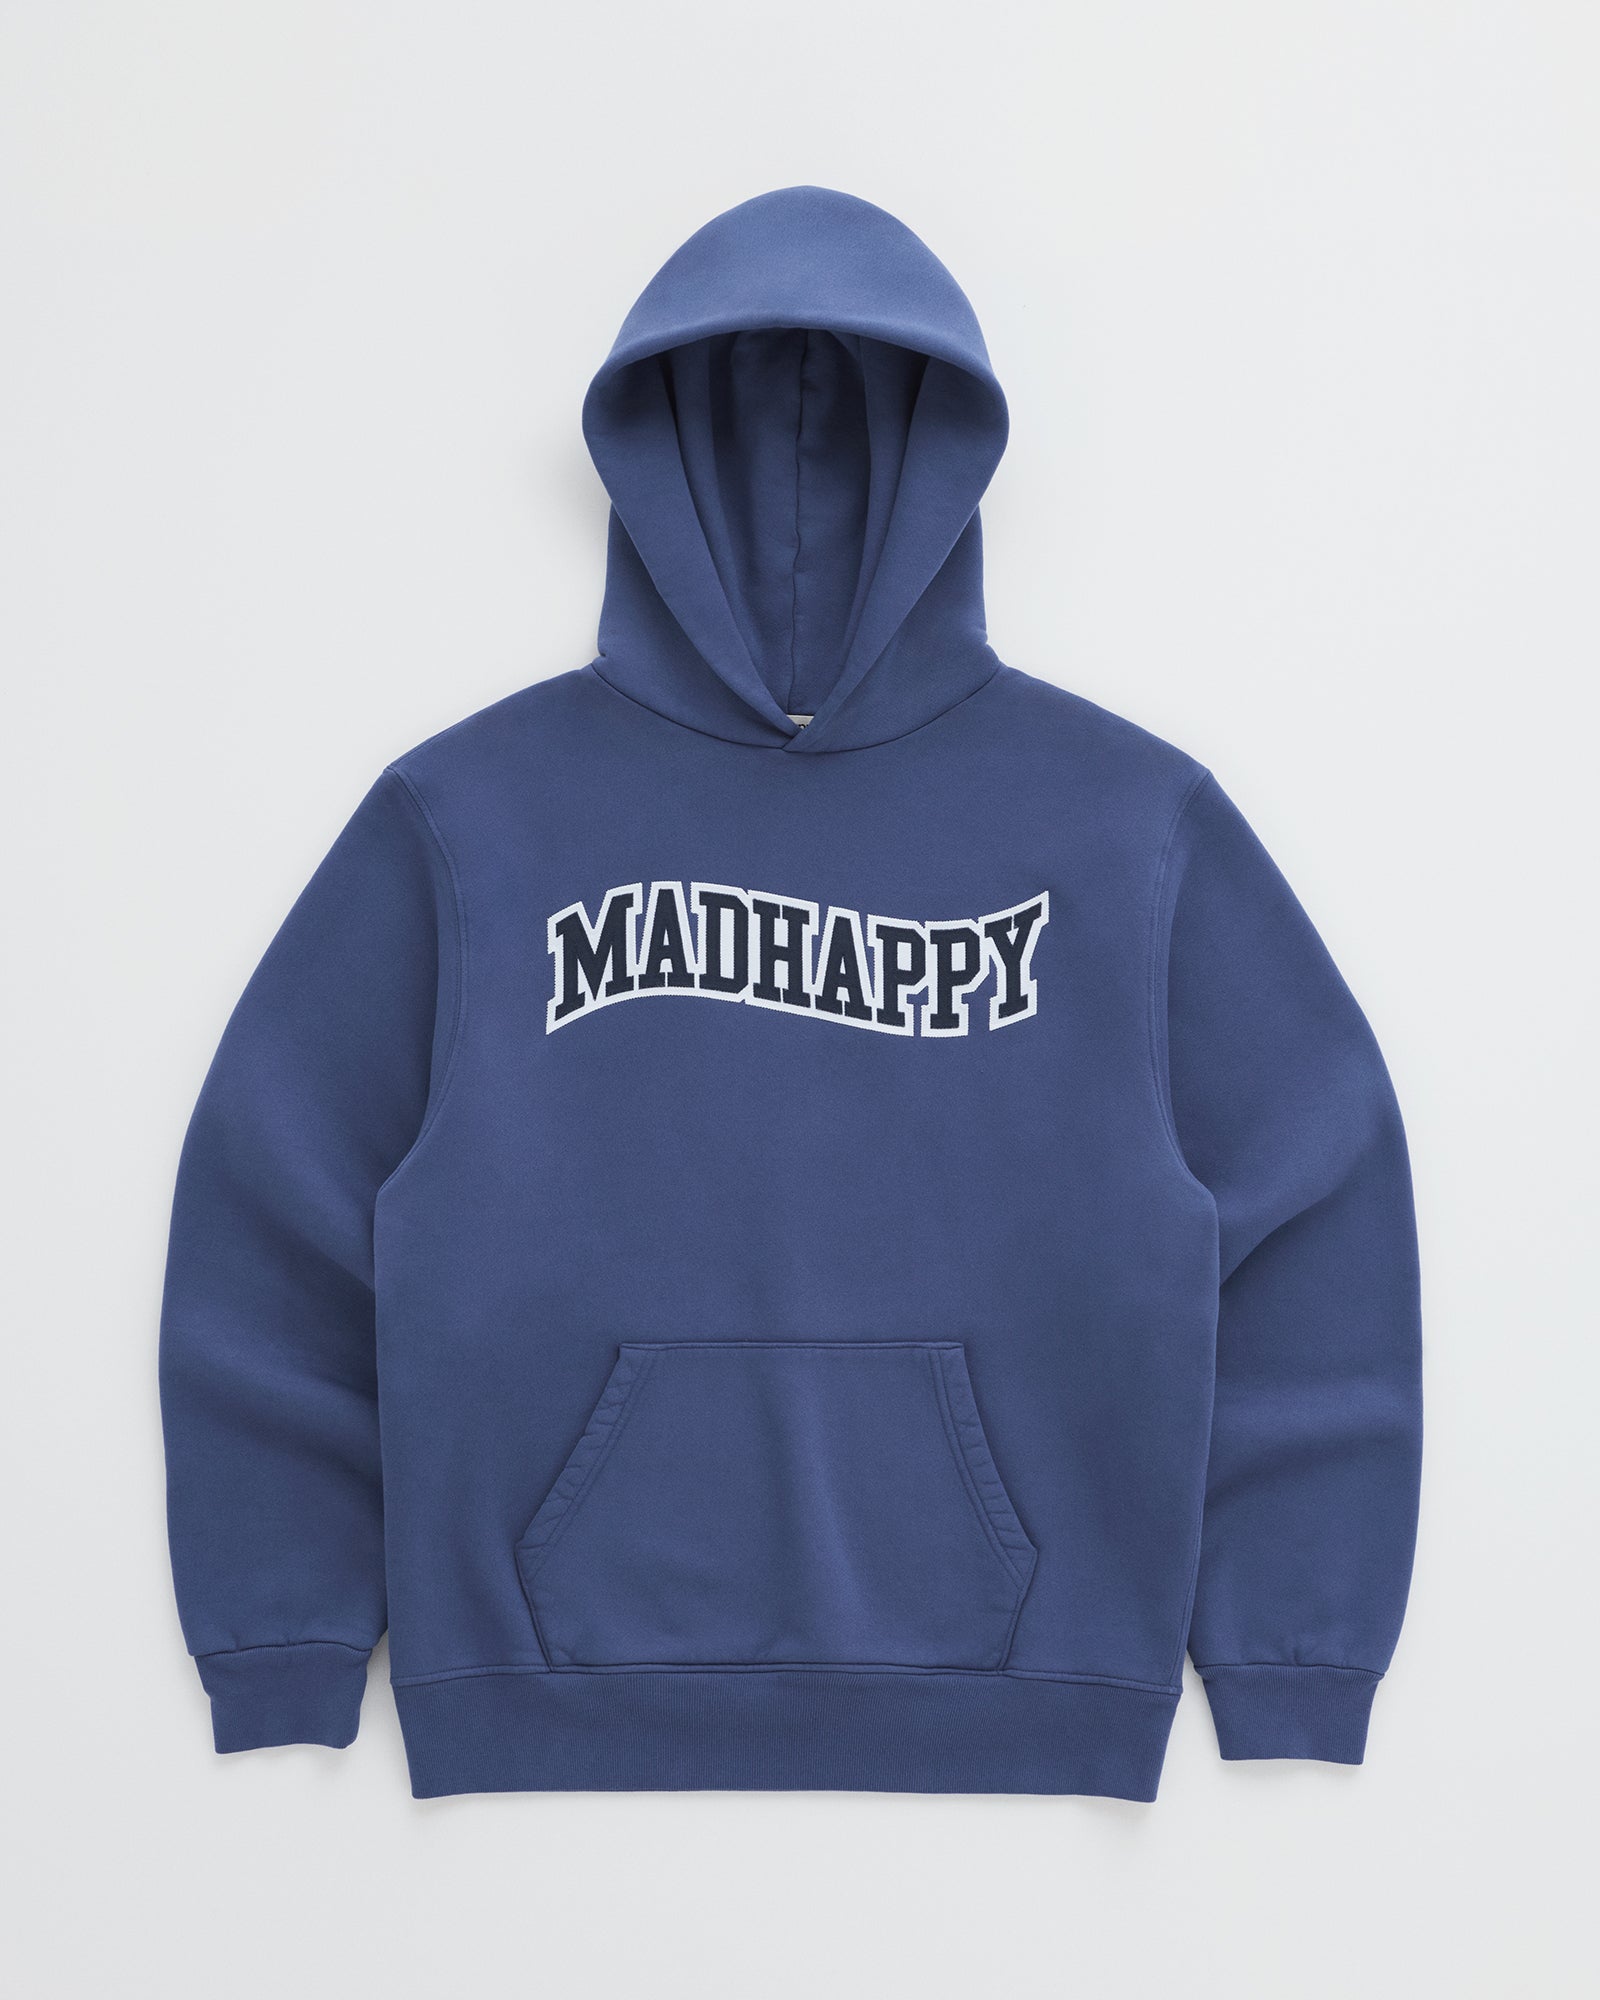 Hoodies – Madhappy